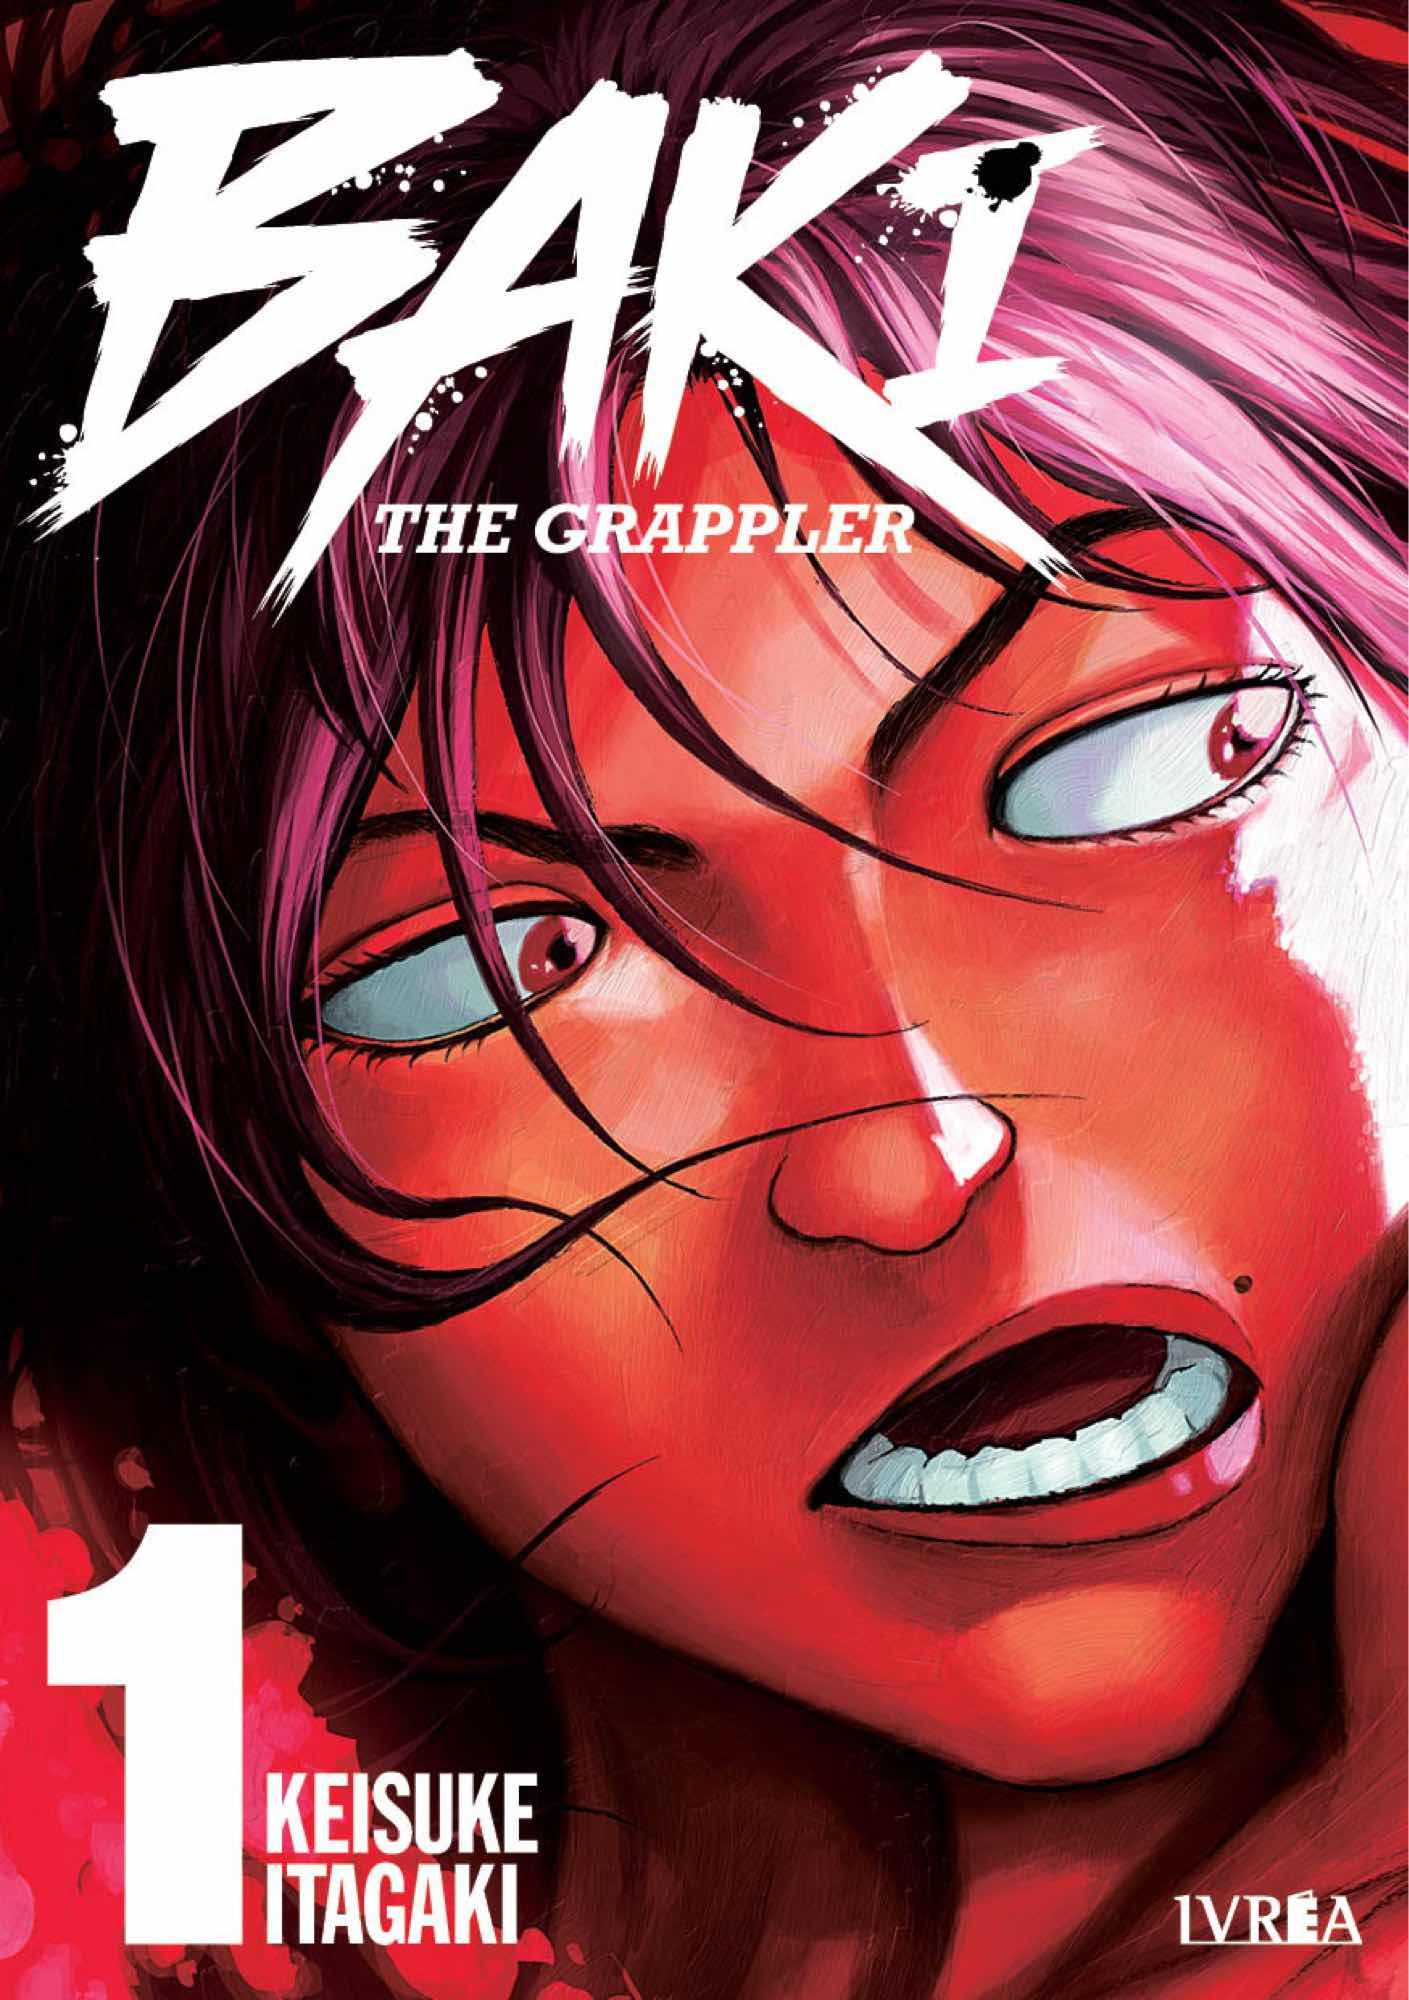 Baki The Grappler #01 Edición Kanzenban